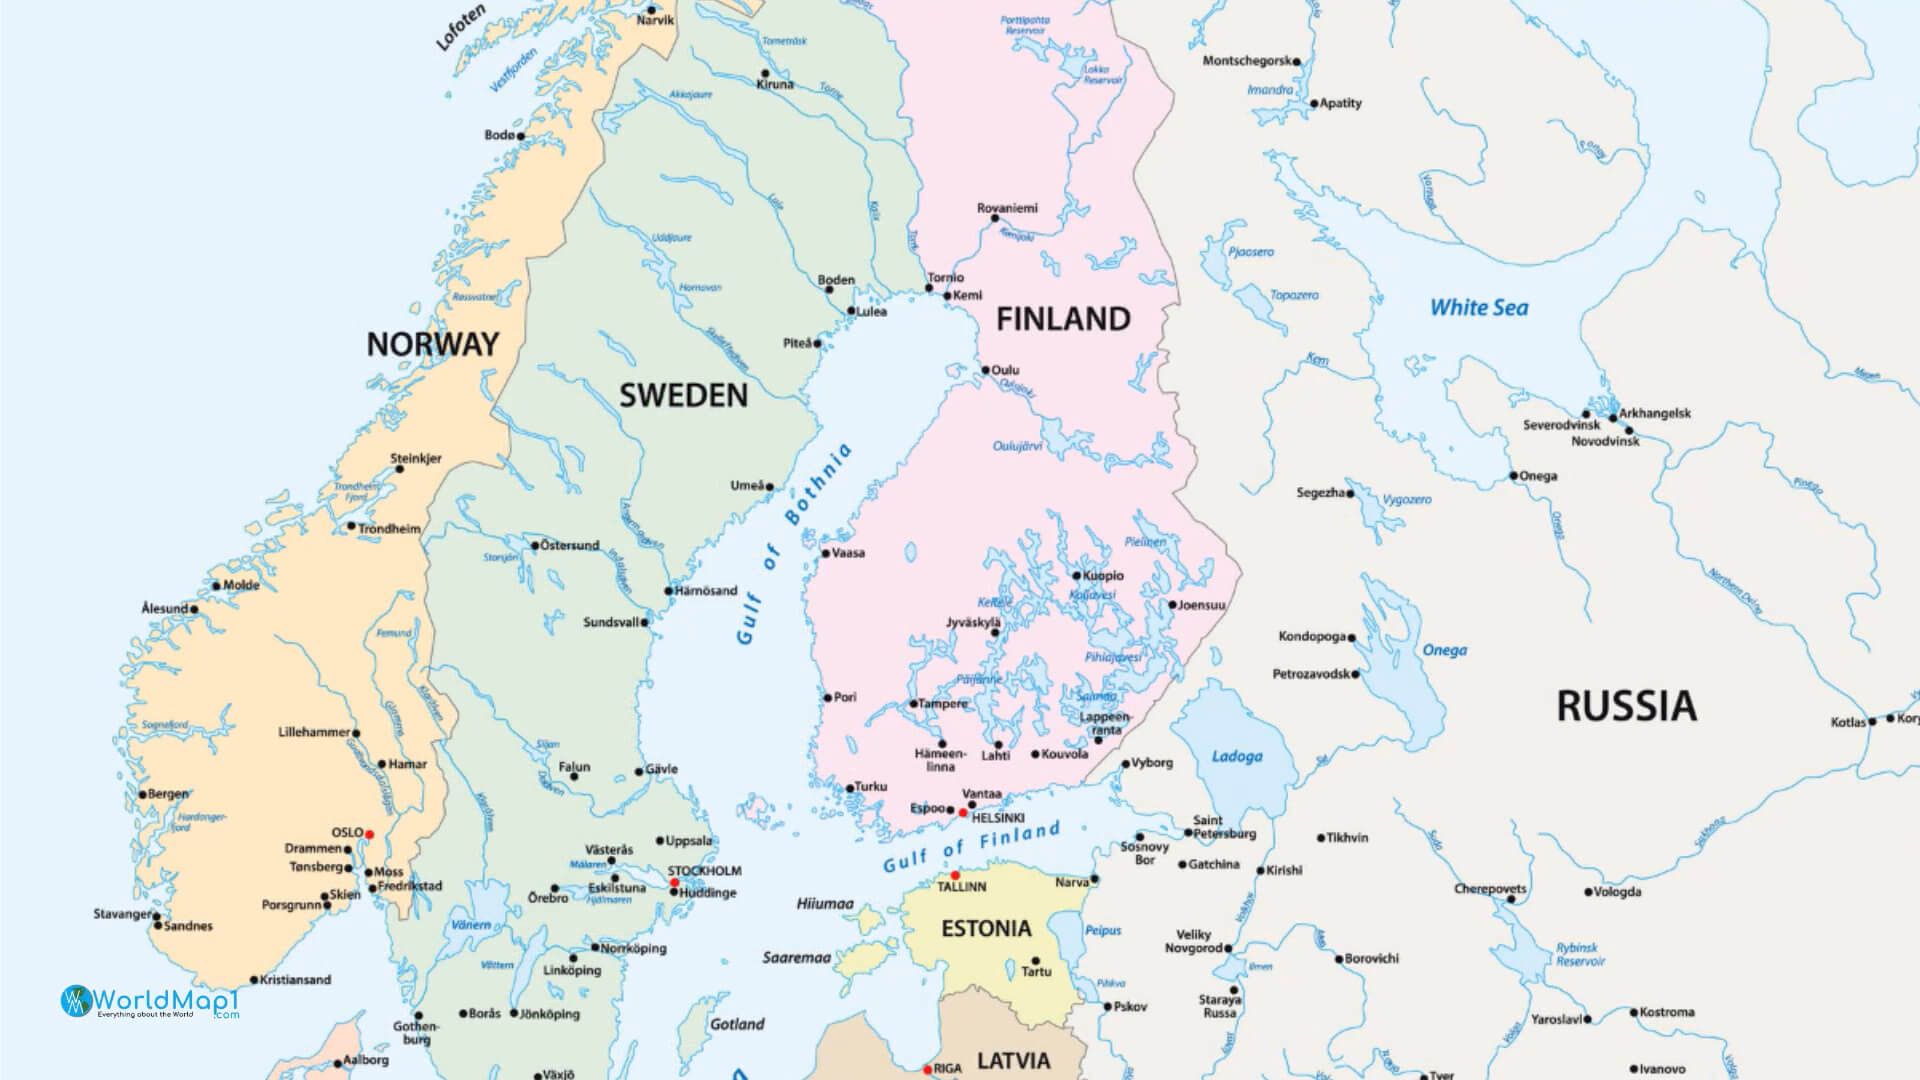 Carte des pays scandinaves et baltes avec la Russie